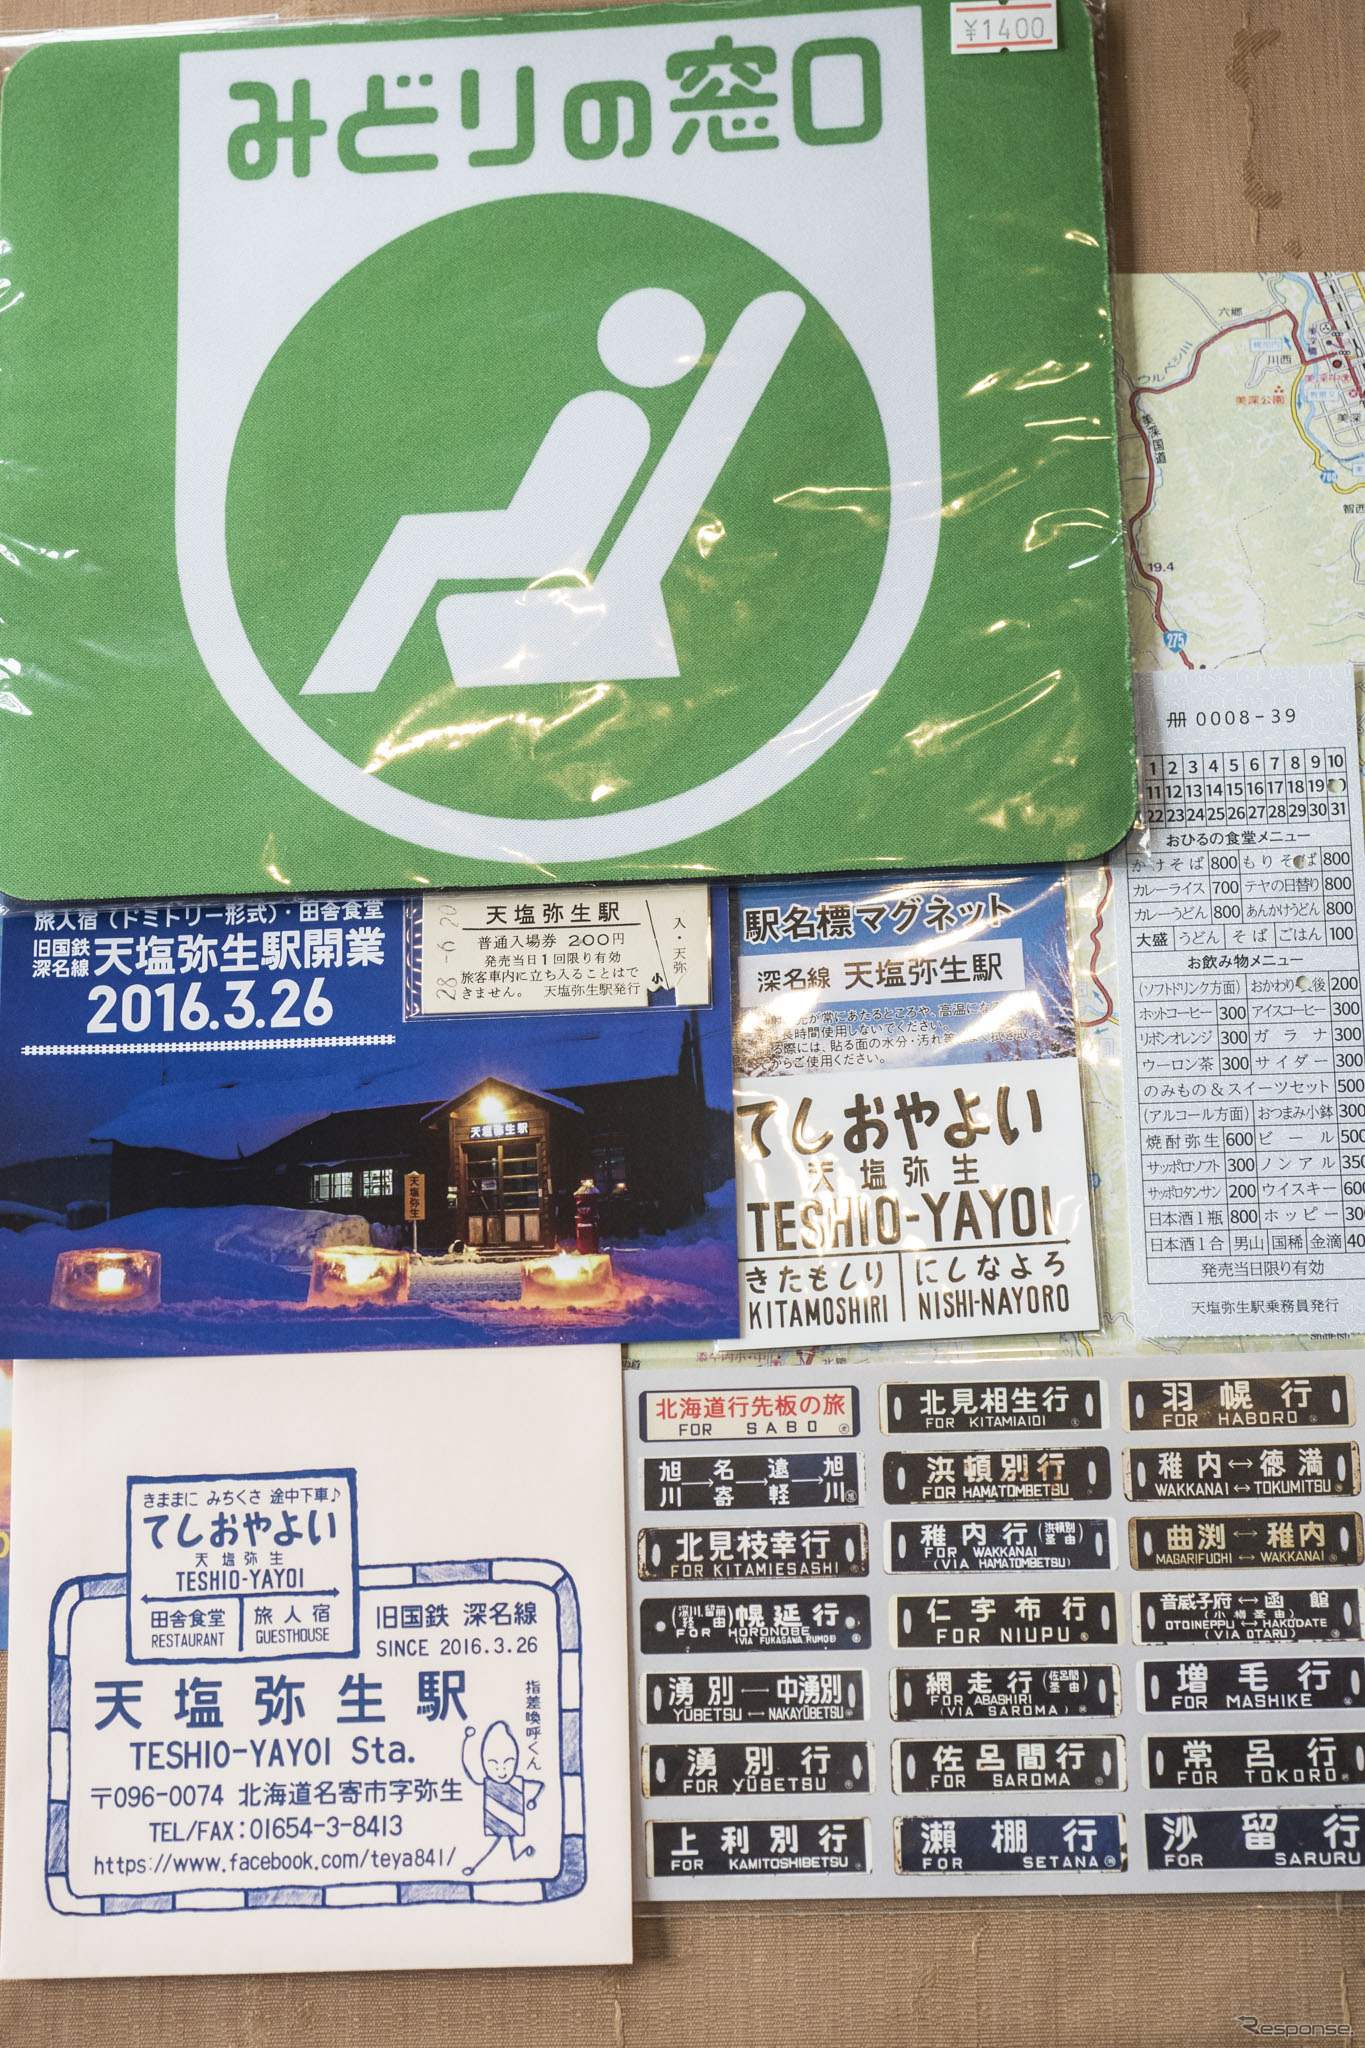 「天塩弥生駅」で買い求めたグッズ類。オープン記念の入場券も売られている。